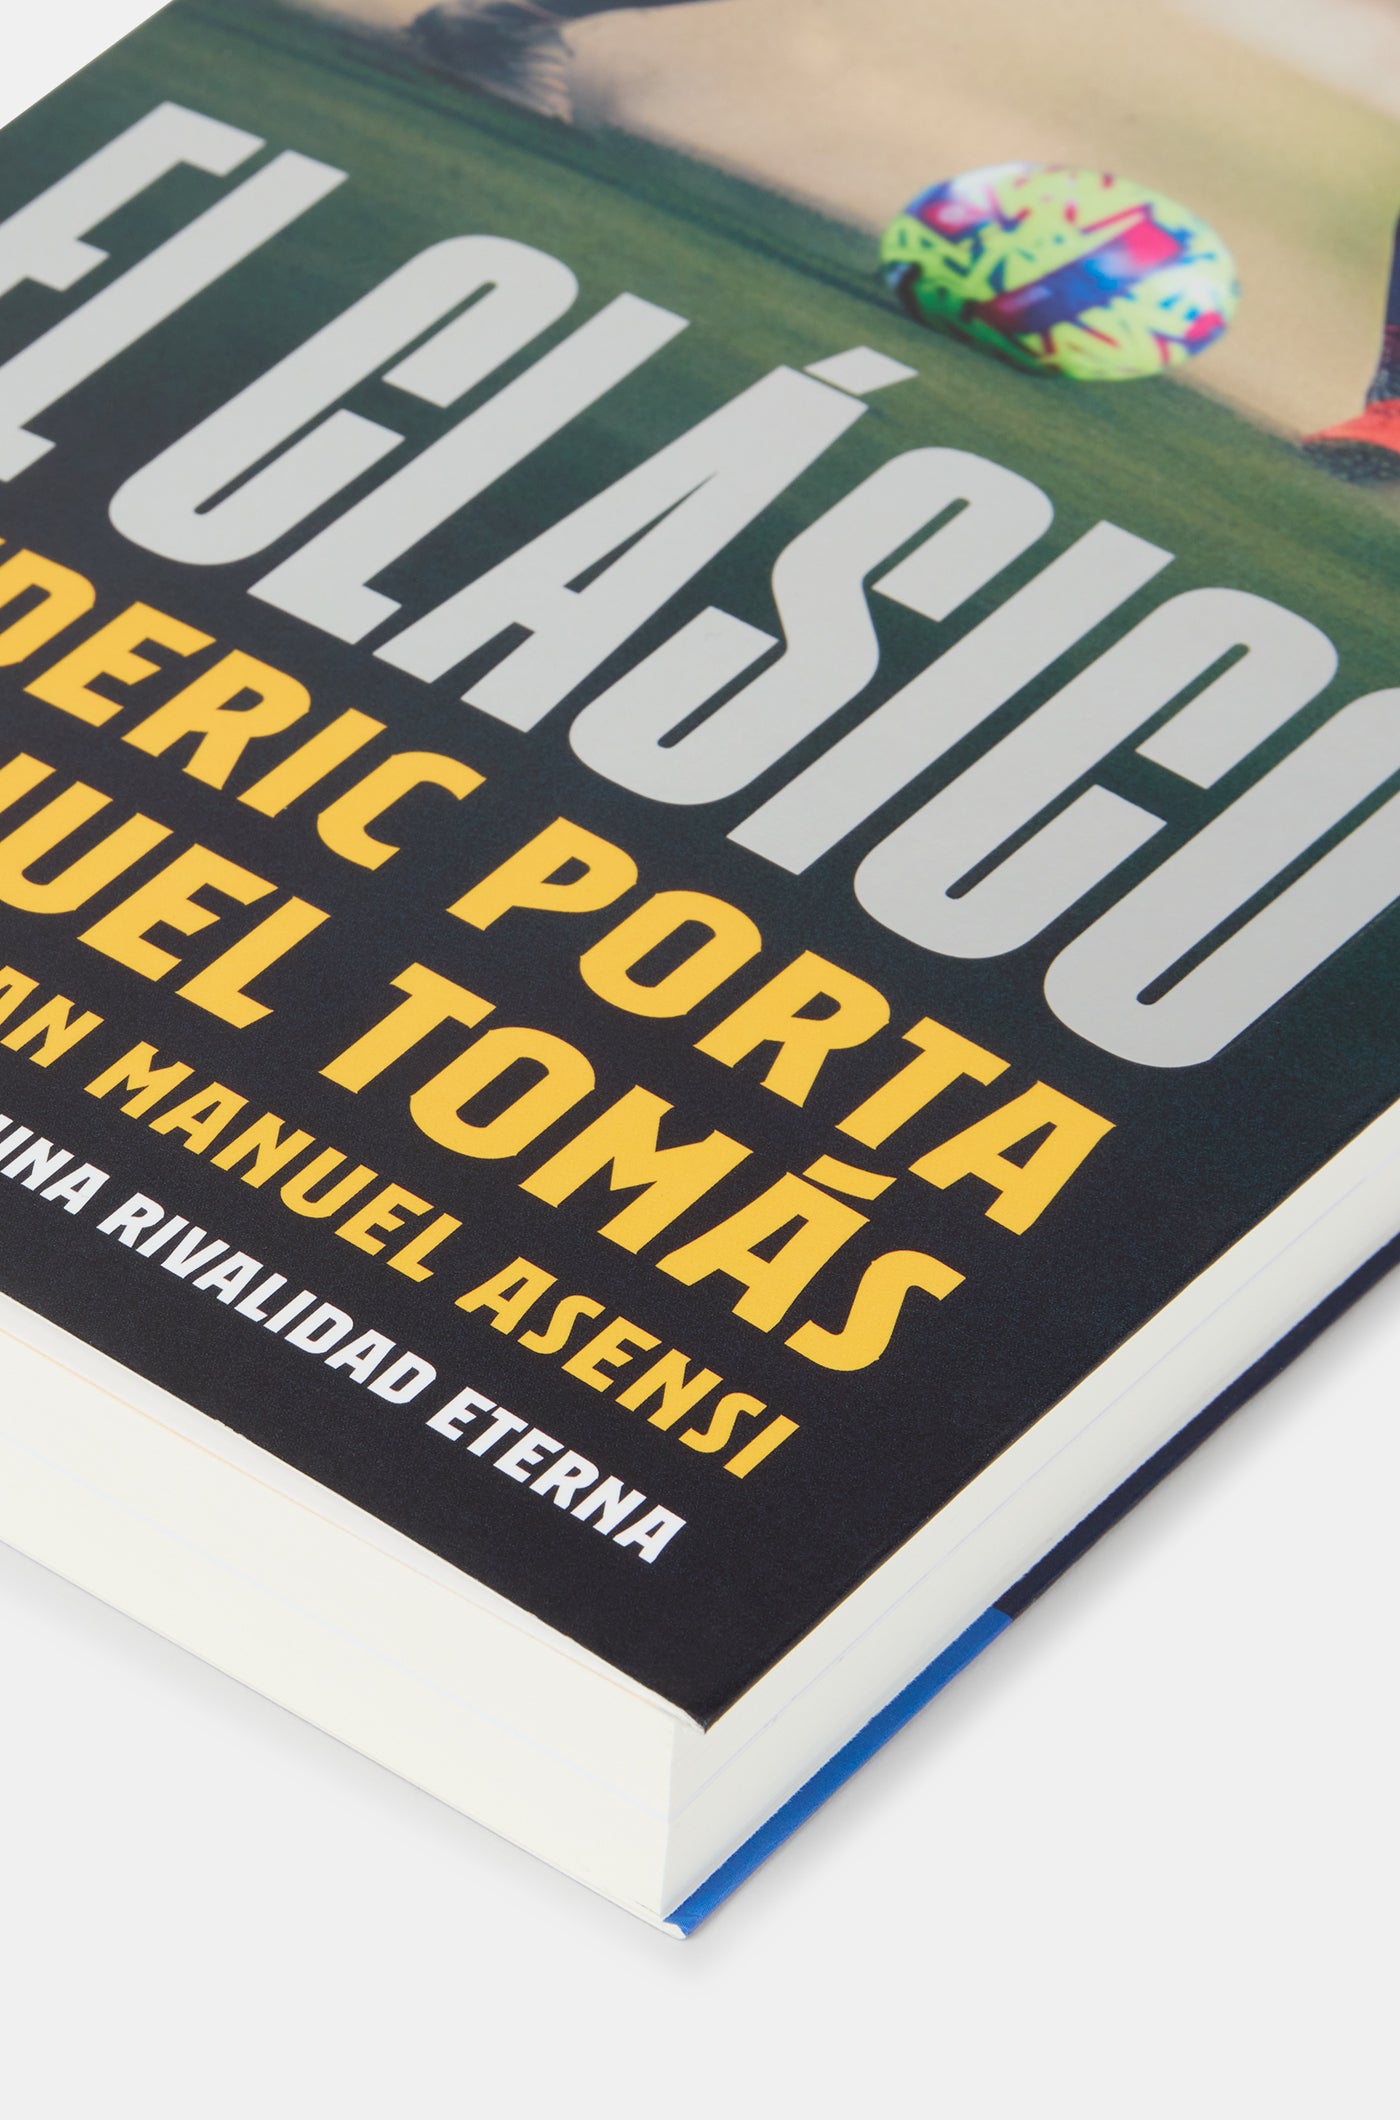 Book "El clásico"